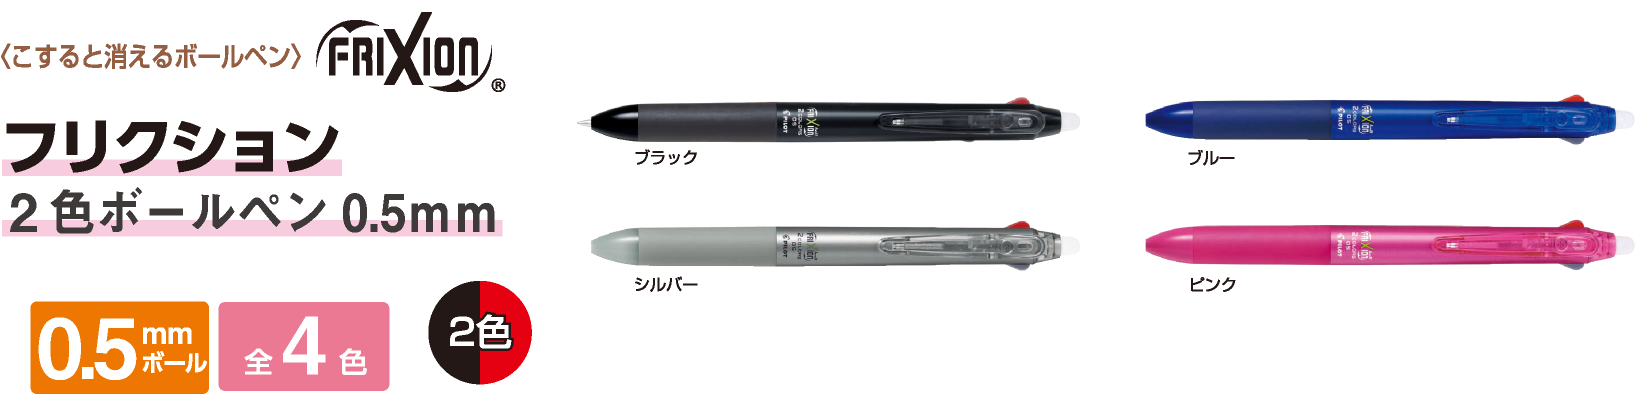 フリクション 2色ボールペン 0.5mm